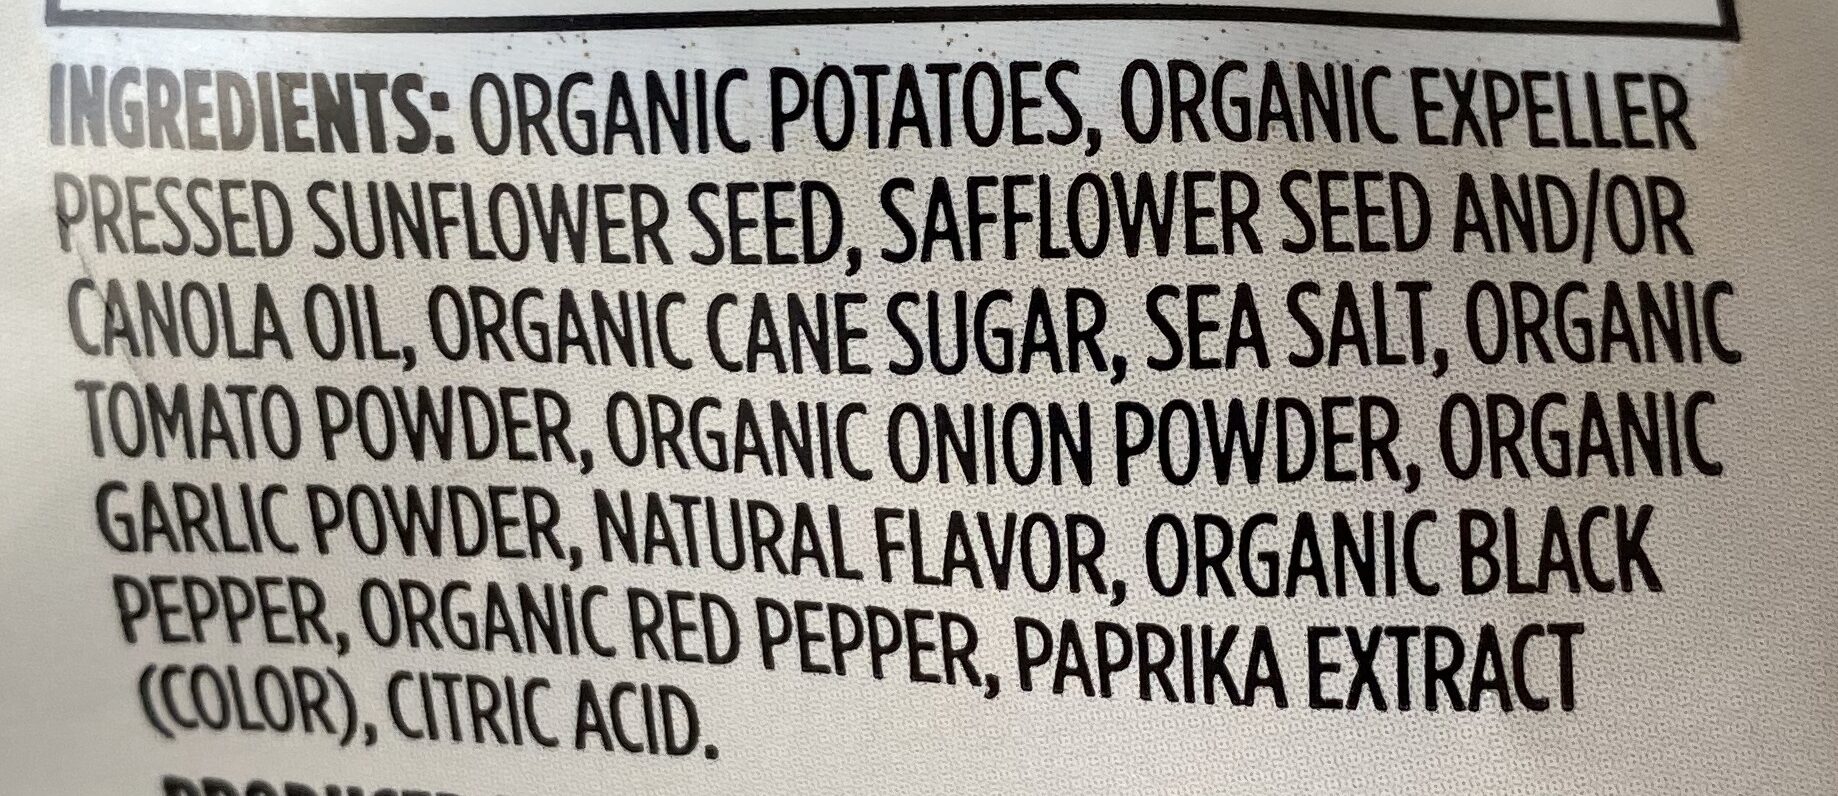 Organic potato chips - Ingredients